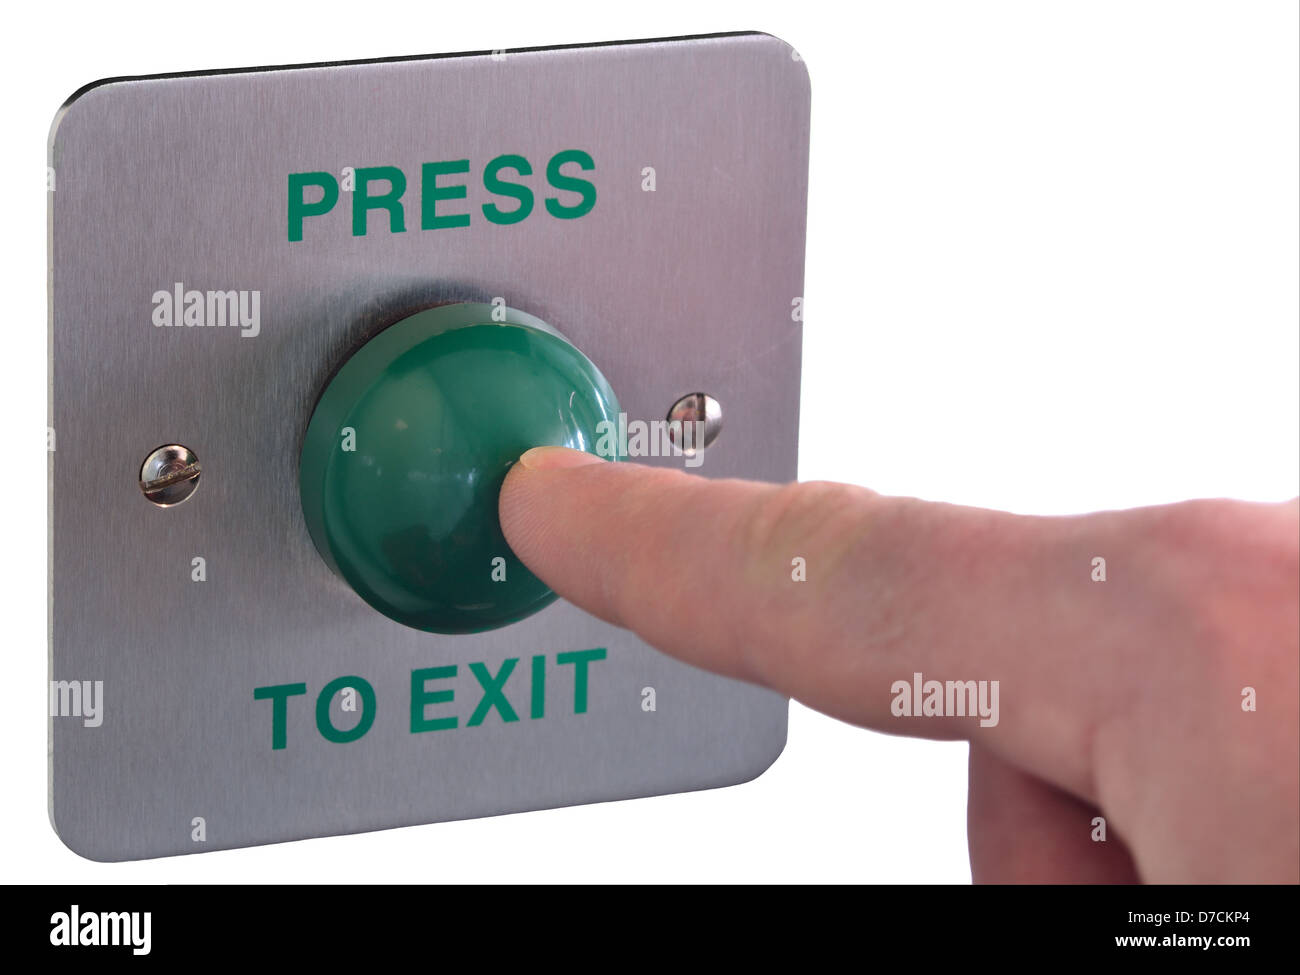 Image d'un doigt en poussant un bouton de sortie vert. Profondeur de champ avec l'accent sur le bout de doigt et bouton Banque D'Images